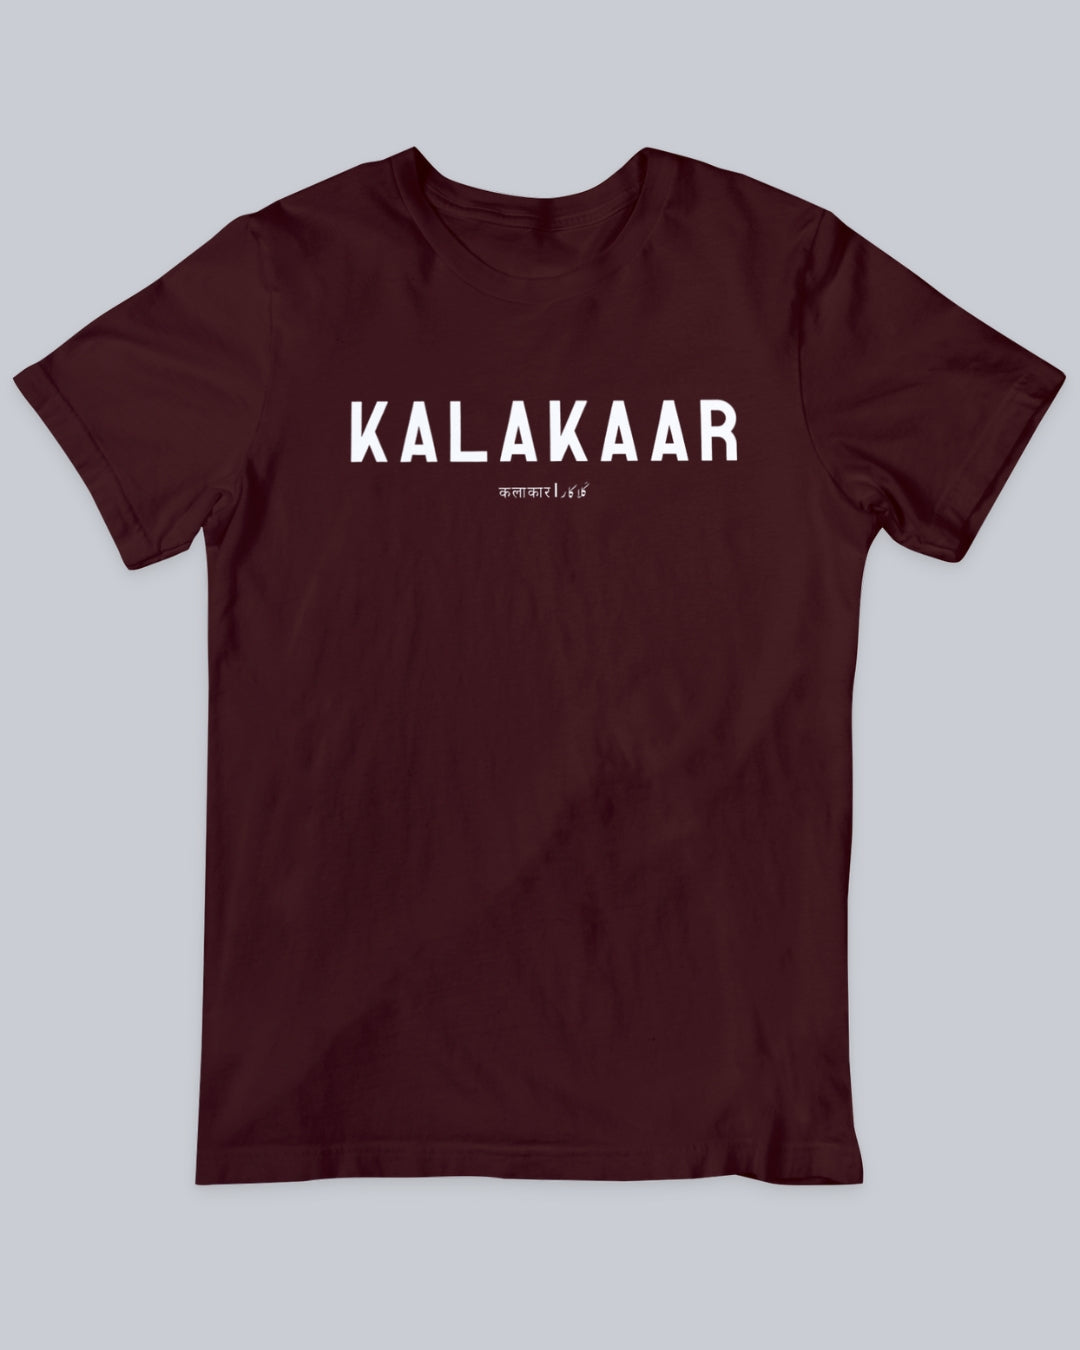 Kalakaar Unisex T-shirt available in Maroon, Black & White.  Urdu Tshirt, Poetry Tshirt, Shayari Tshirt, Rekhta Tshirt, Rekhta Store Merchandise.